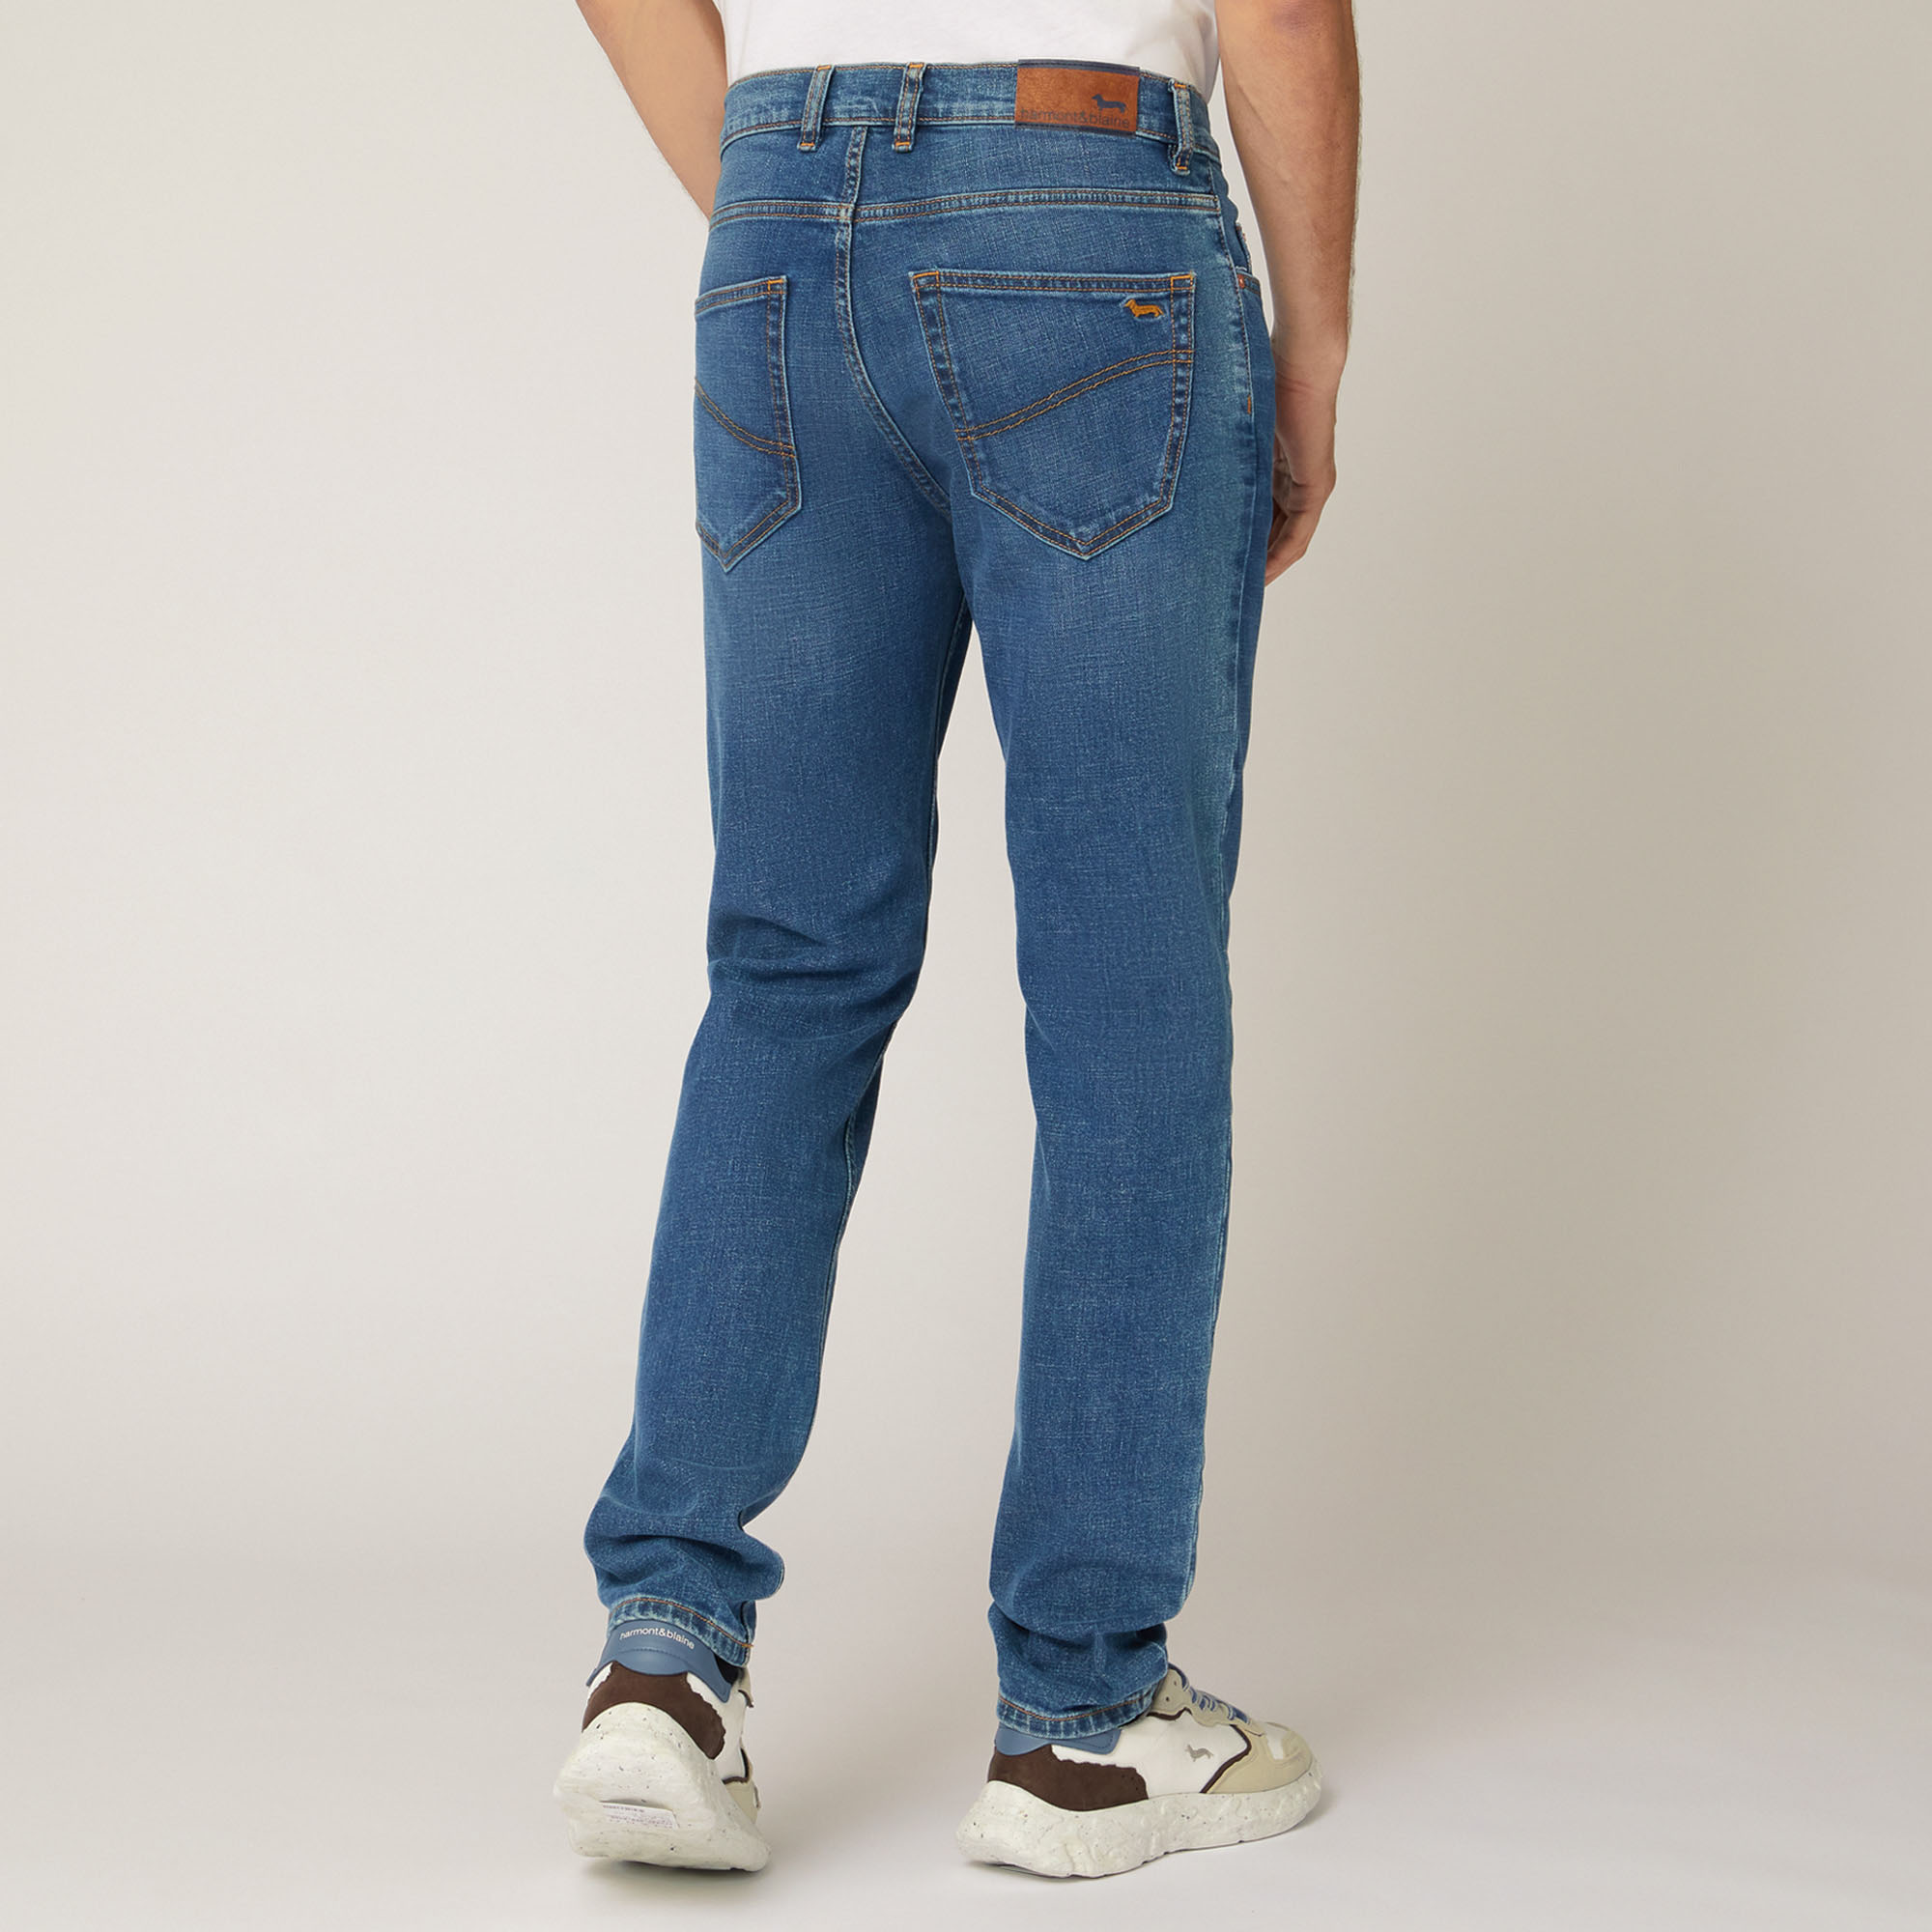 Pantaloni Narrow Fit In Denim, Blu Denim, large image number 1